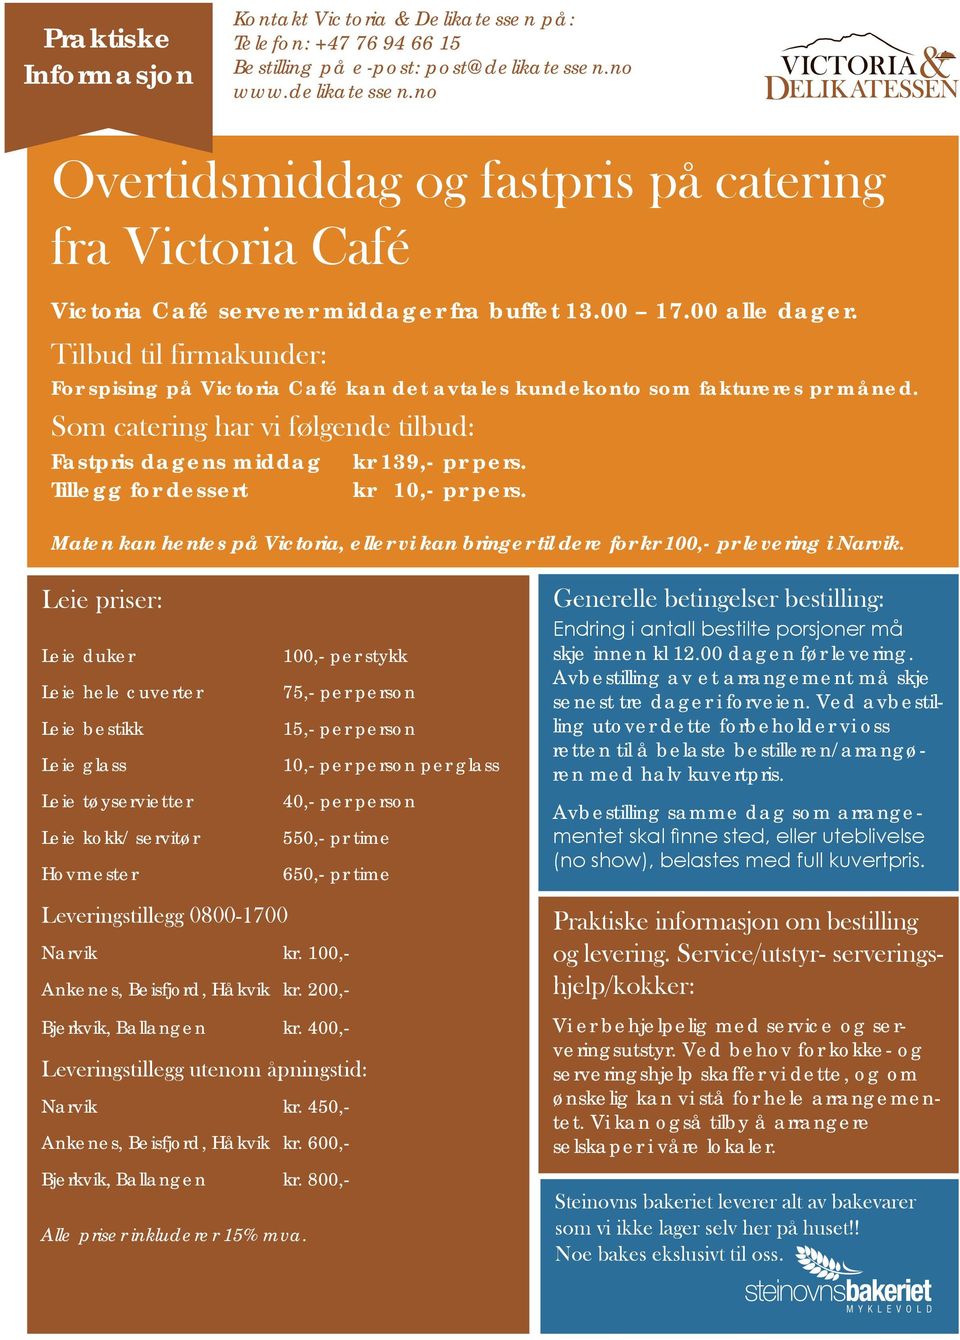 Tilbud til firmakunder: For spising på Victoria Café kan det avtales kundekonto som faktureres pr måned.